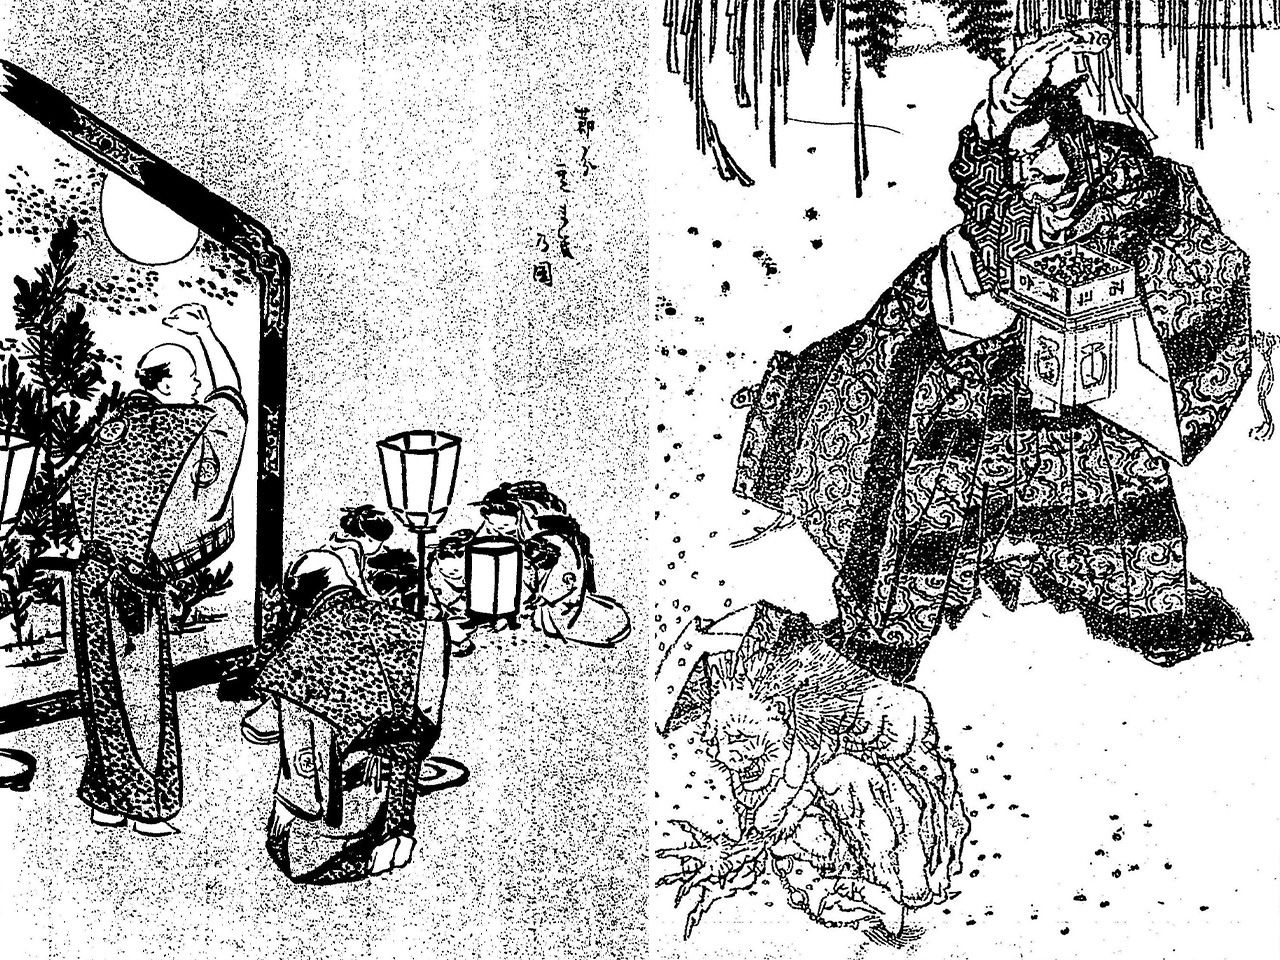 Слева – разбрасыванием бобов занимается пожилой мужчина в парадном одеянии камисимо («Иллюстрированная книга происхождения народных обычаев Эдо», Эдо фунай эхон фудзоку дзюрай, Национальная парламентская библиотека); справа – картинка из учебника рисования «Хокусай манга», созданного знаменитым художником укиё-э Кацусика Хокусай, на которой разбрасывающим бобы изображён Саката Кинтоки (Кинтаро), известный тем, что истреблял таких демонов, как Сютэн Додзи (Национальная парламентская библиотека)